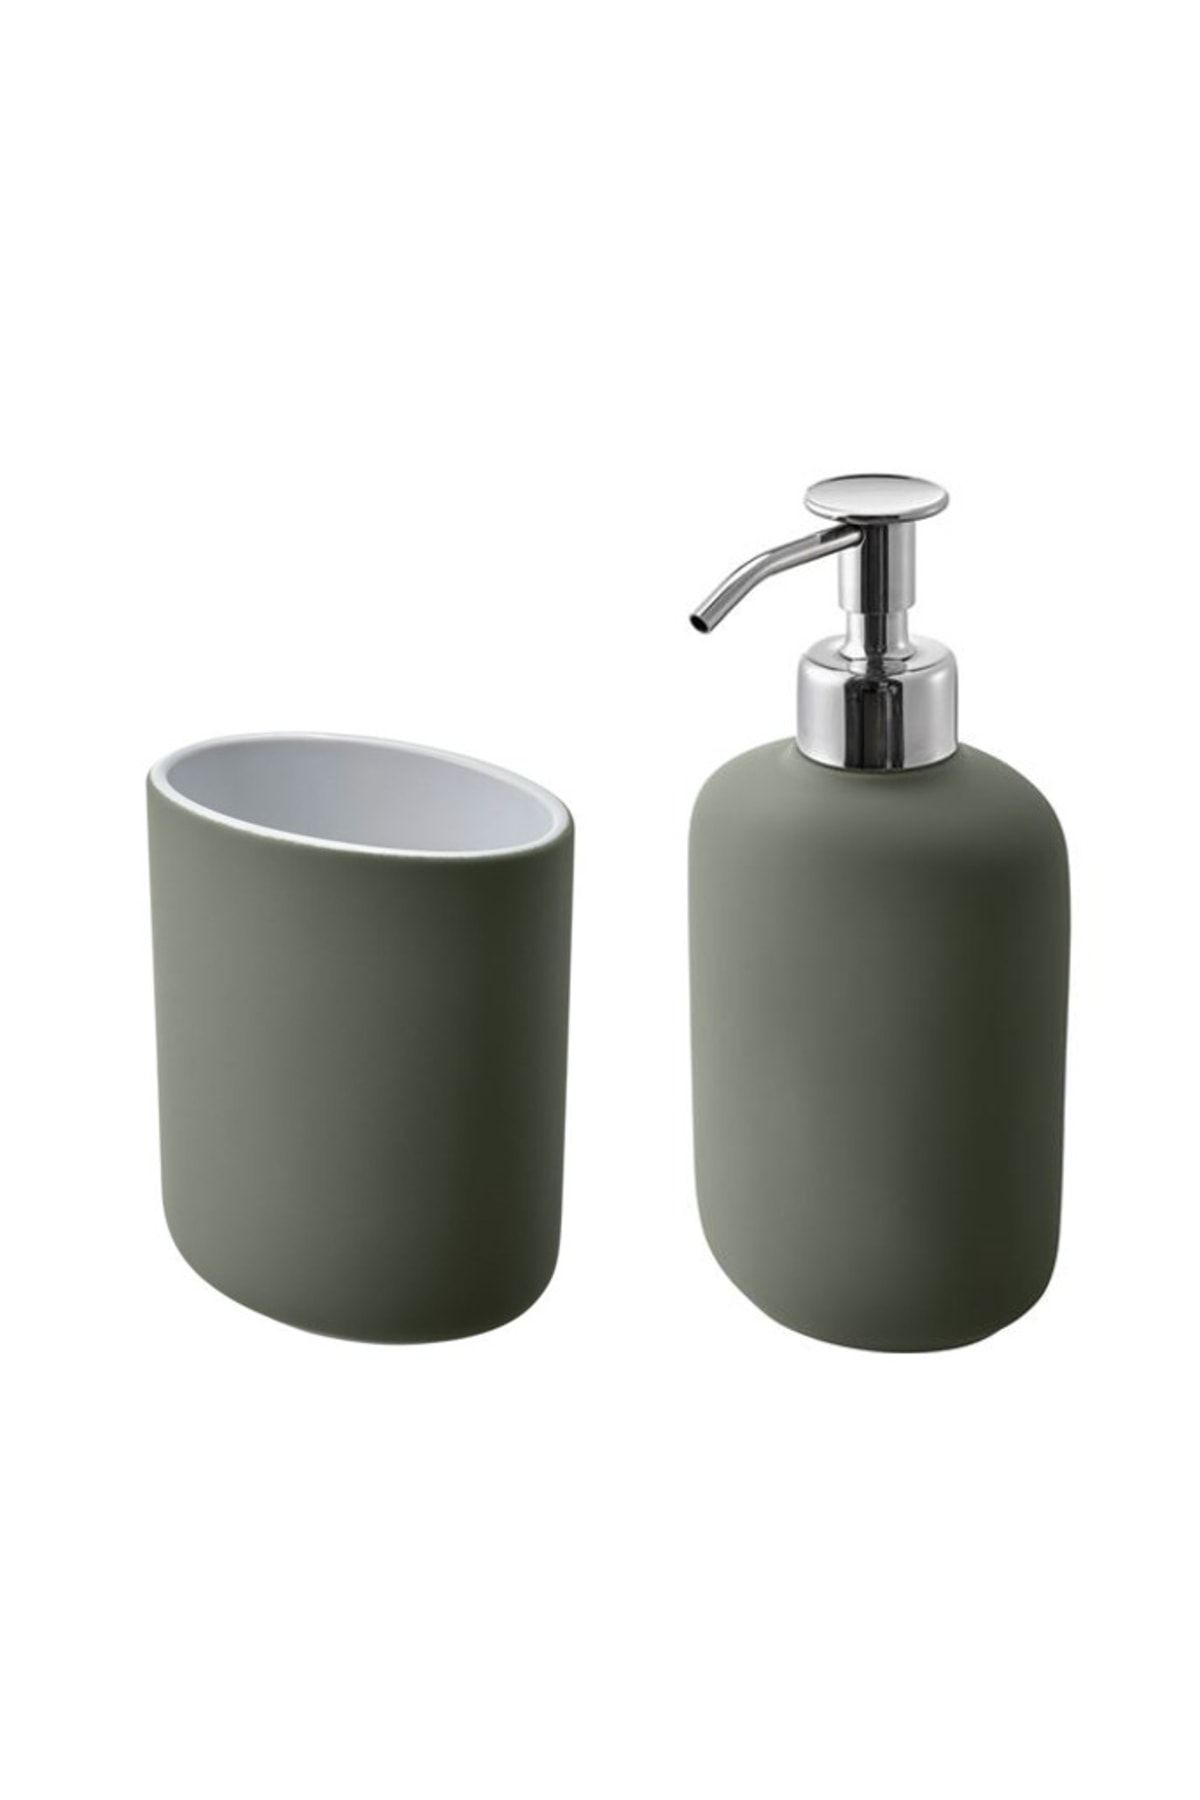 IKEA Ekoln Banyo Seti, Diş Fırçalık & Sıvı Sabunluk - Yeşil